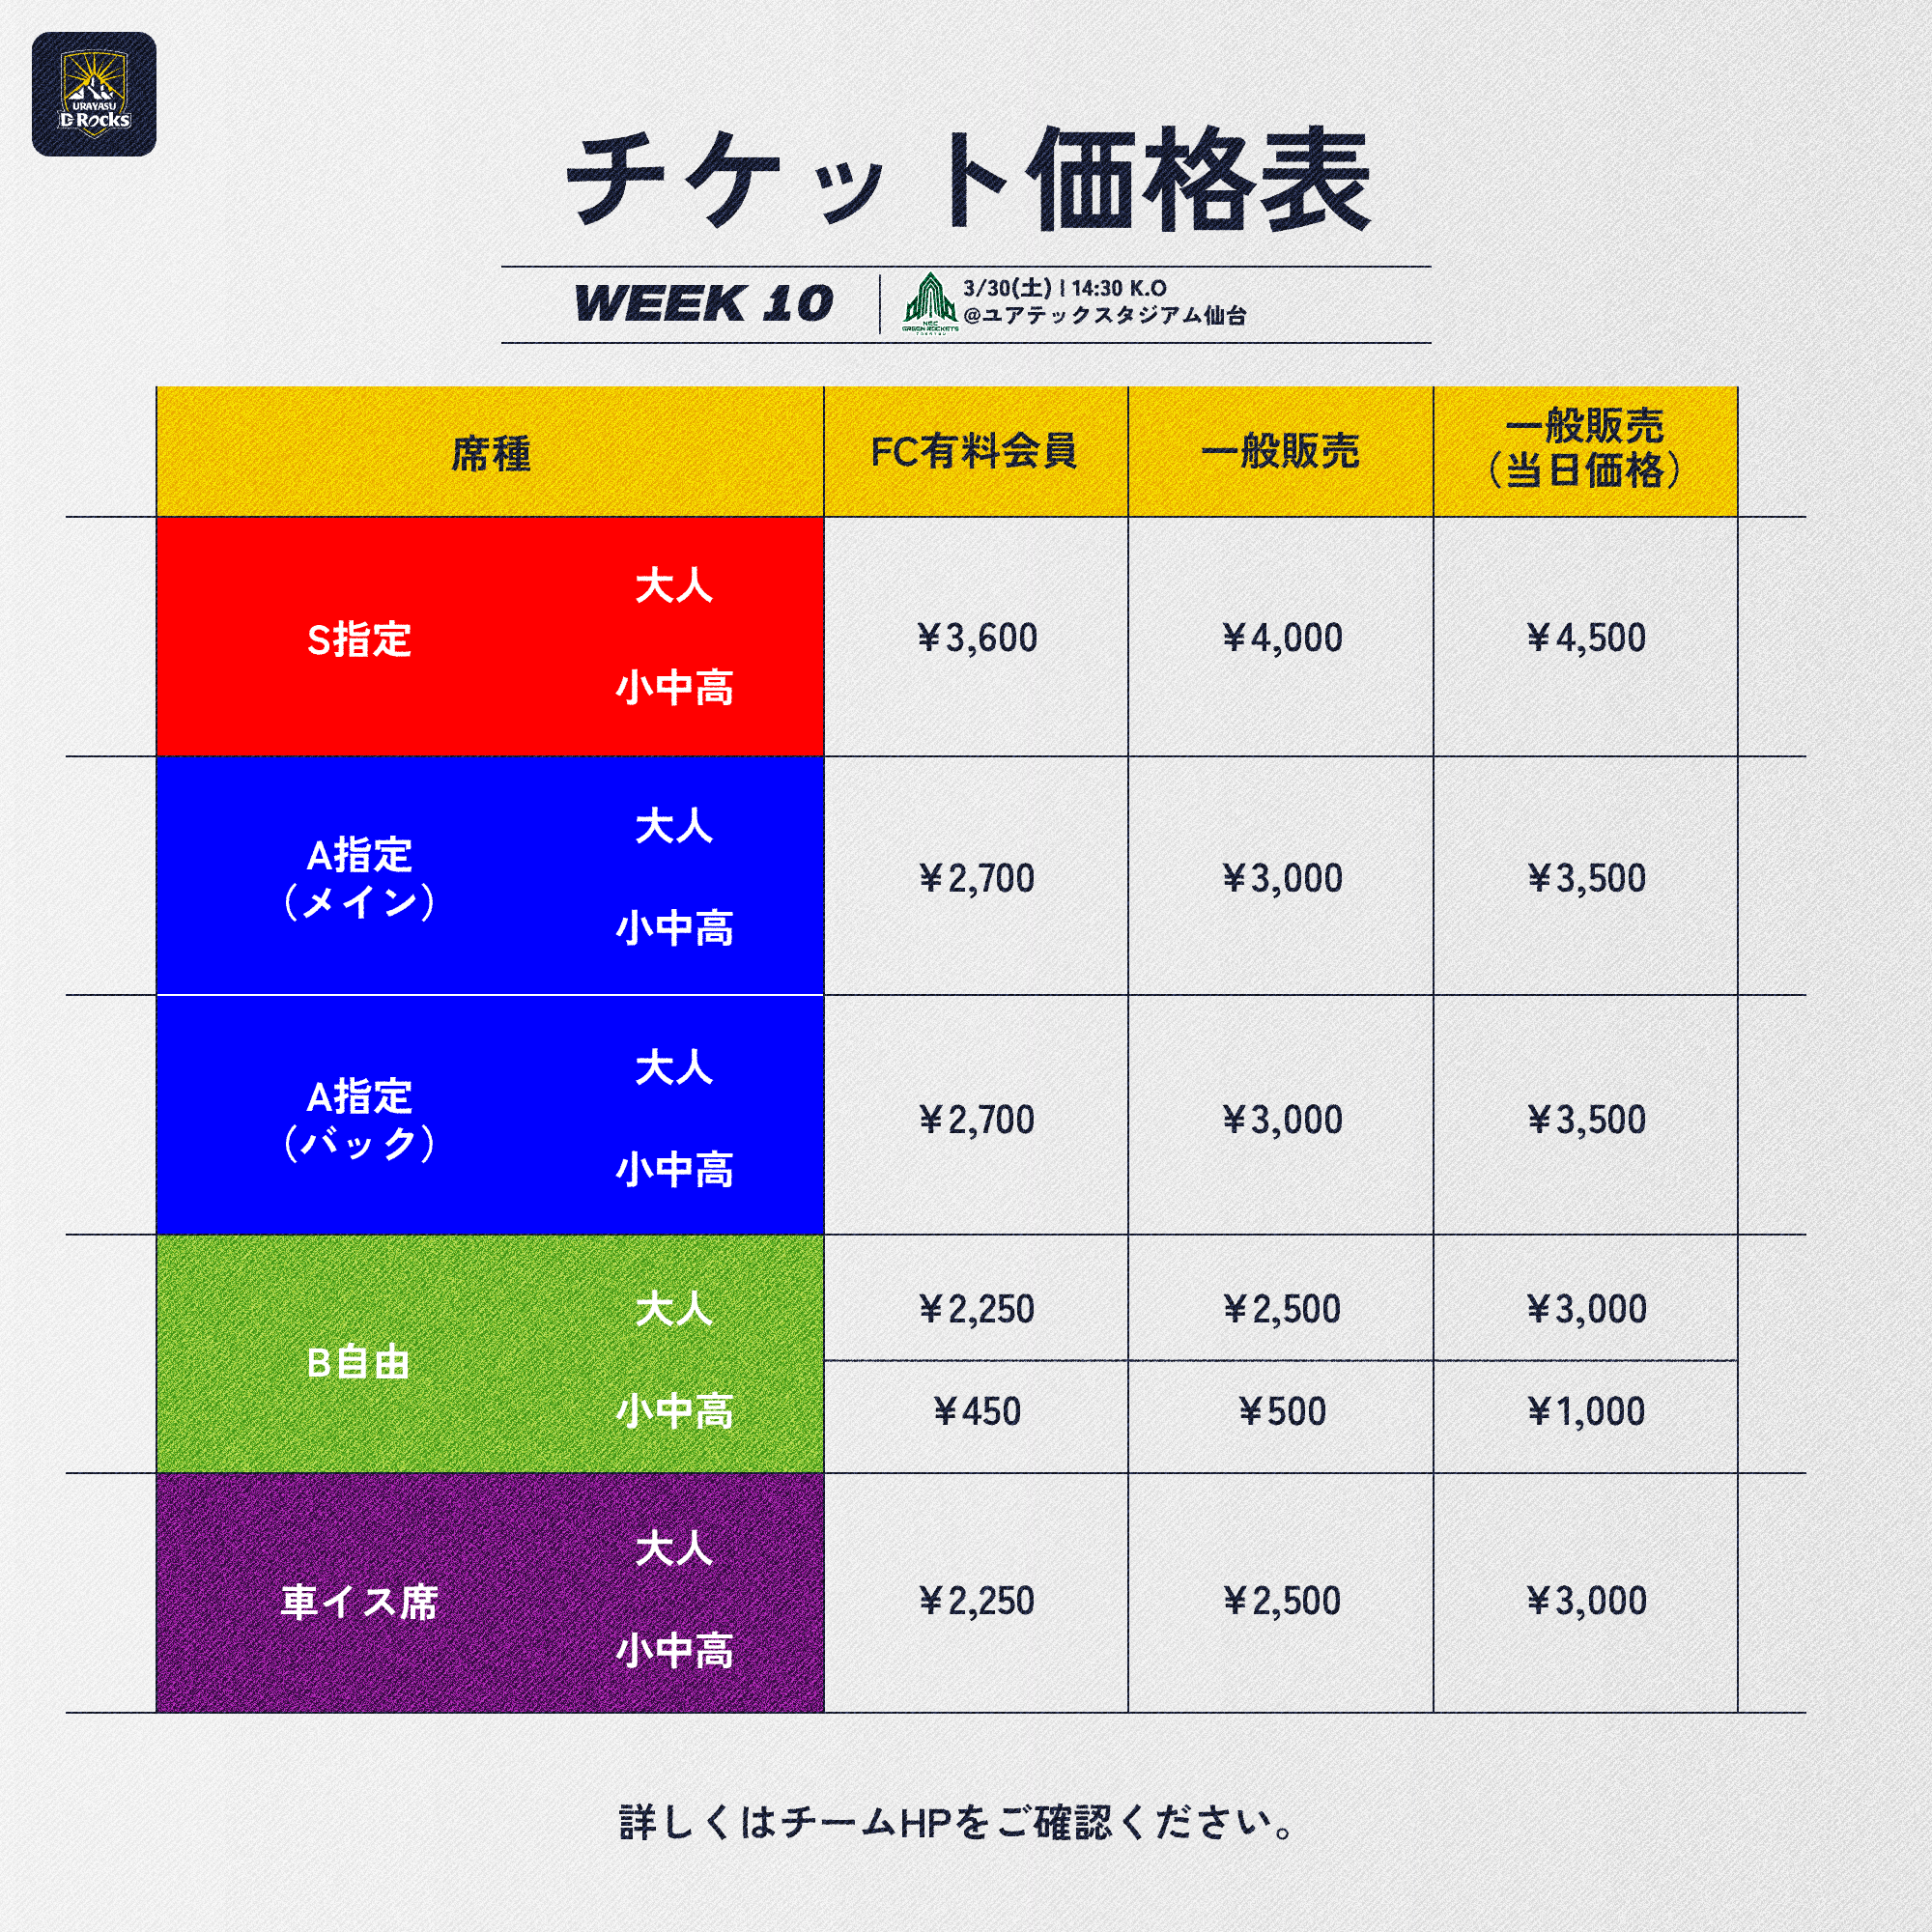 【白】シーズンチケット価格表(スクエア) -NEC.png